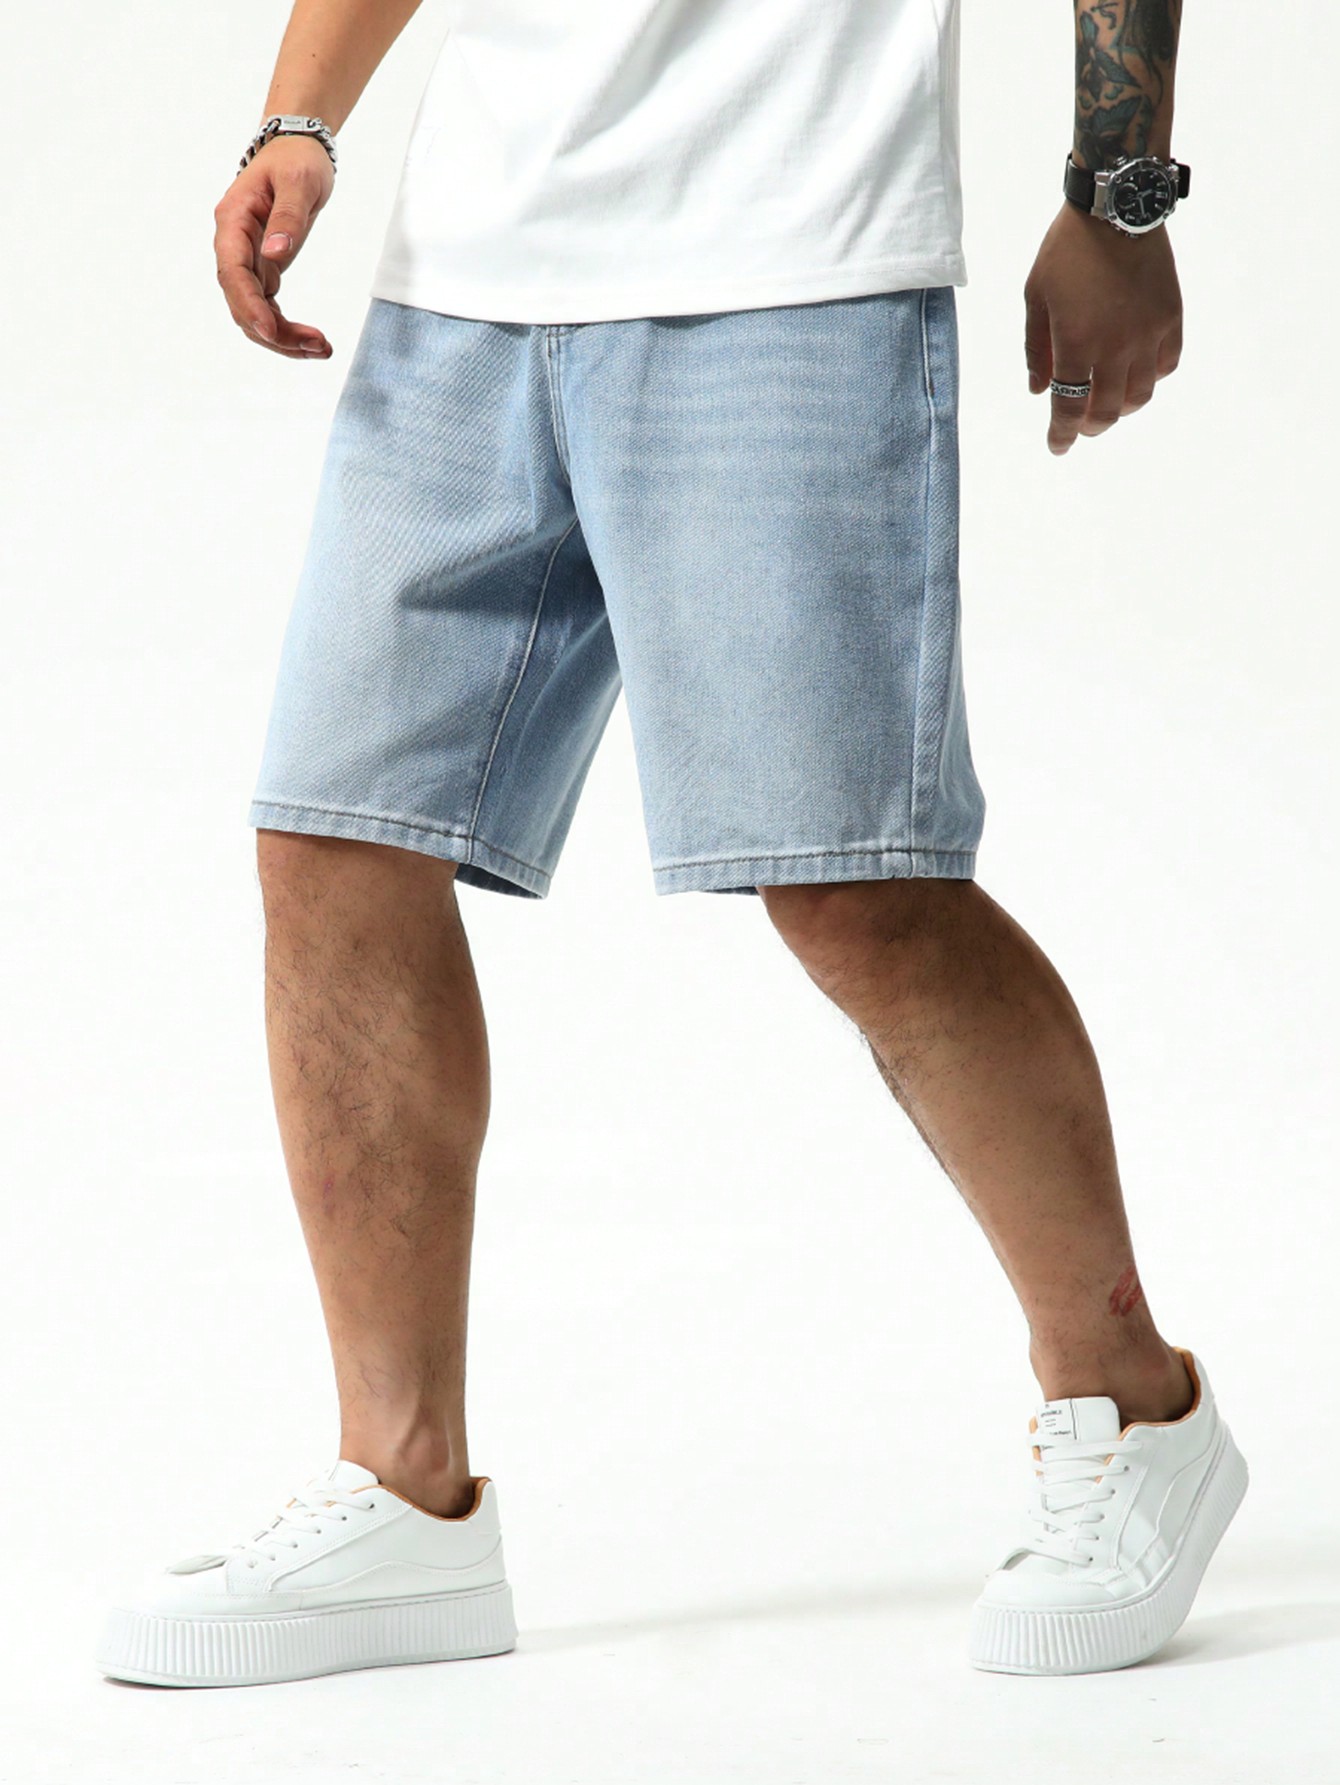 Мужские джинсовые шорты с карманами Manfinity EMRG, легкая стирка джинсовые шорты с цветочным принтом легкая стирка